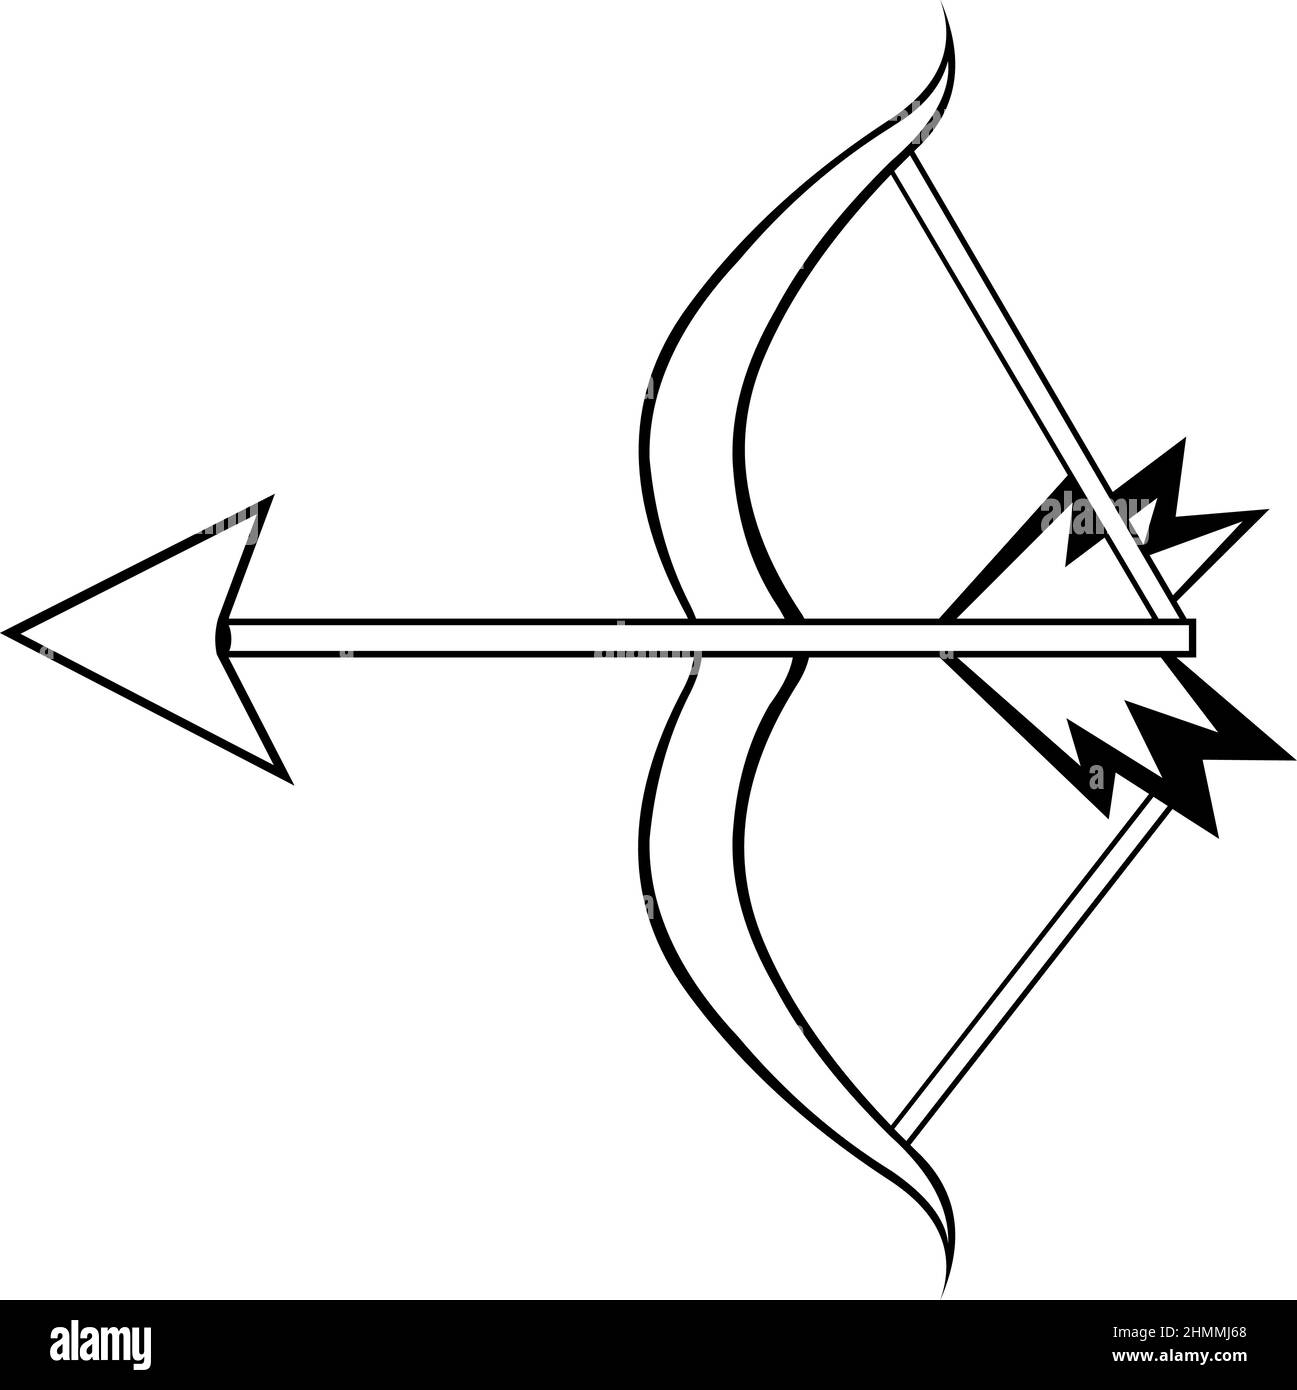 Illustration vectorielle d'un arc et d'une flèche dessinés en noir et blanc Illustration de Vecteur